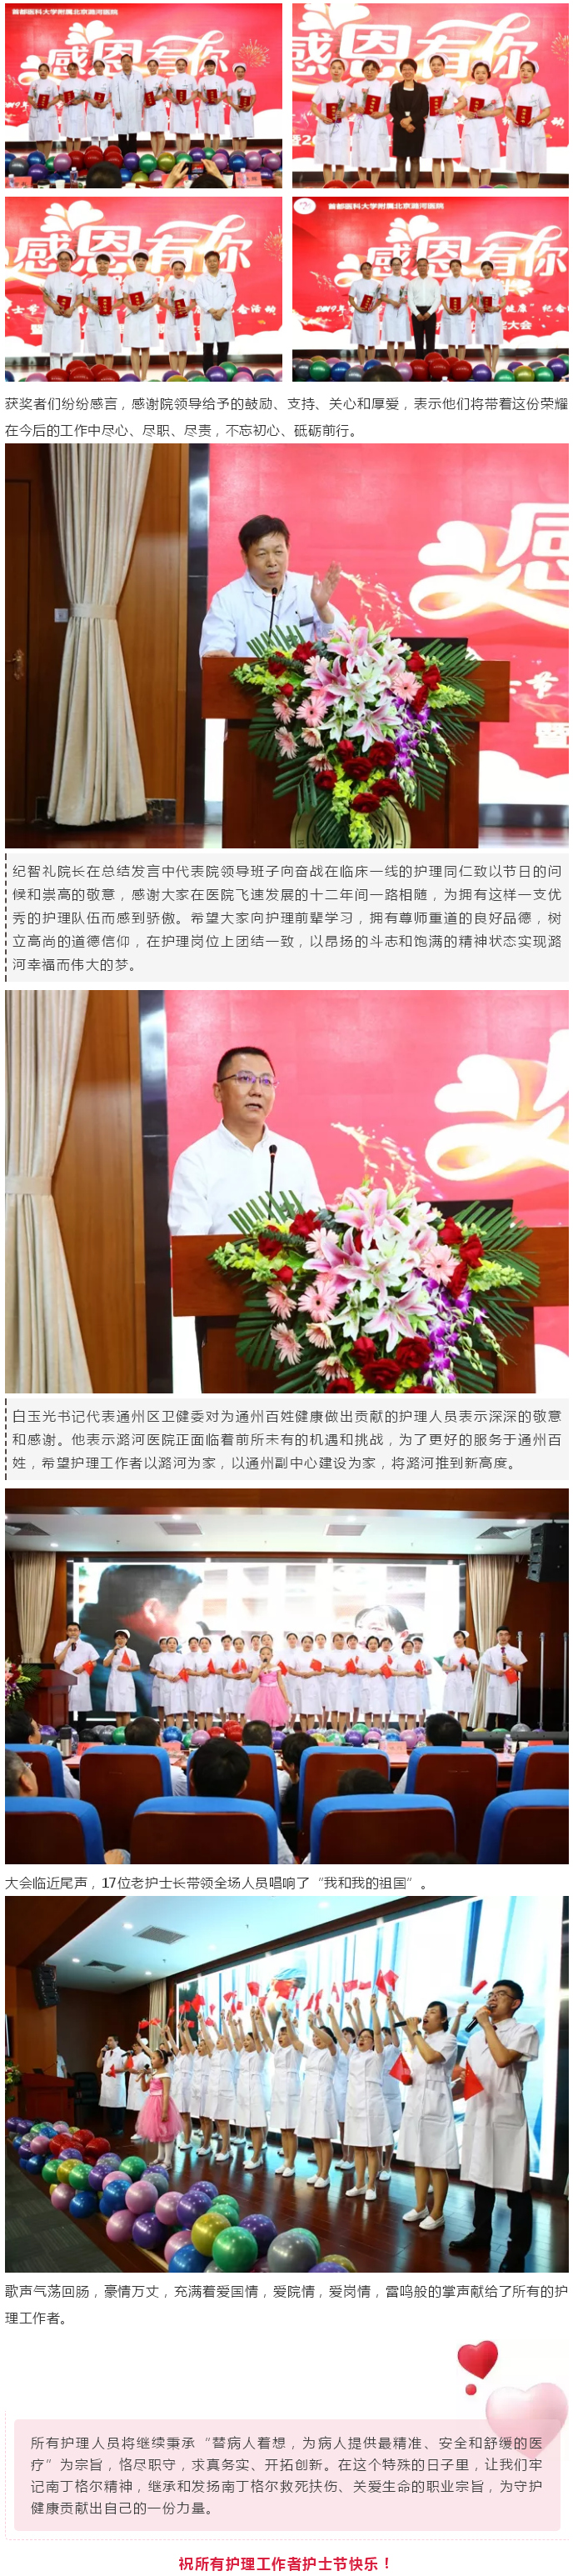 感恩有你 一路相伴——潞河医院举行纪念5.12国际护士节主题大会---3.jpg